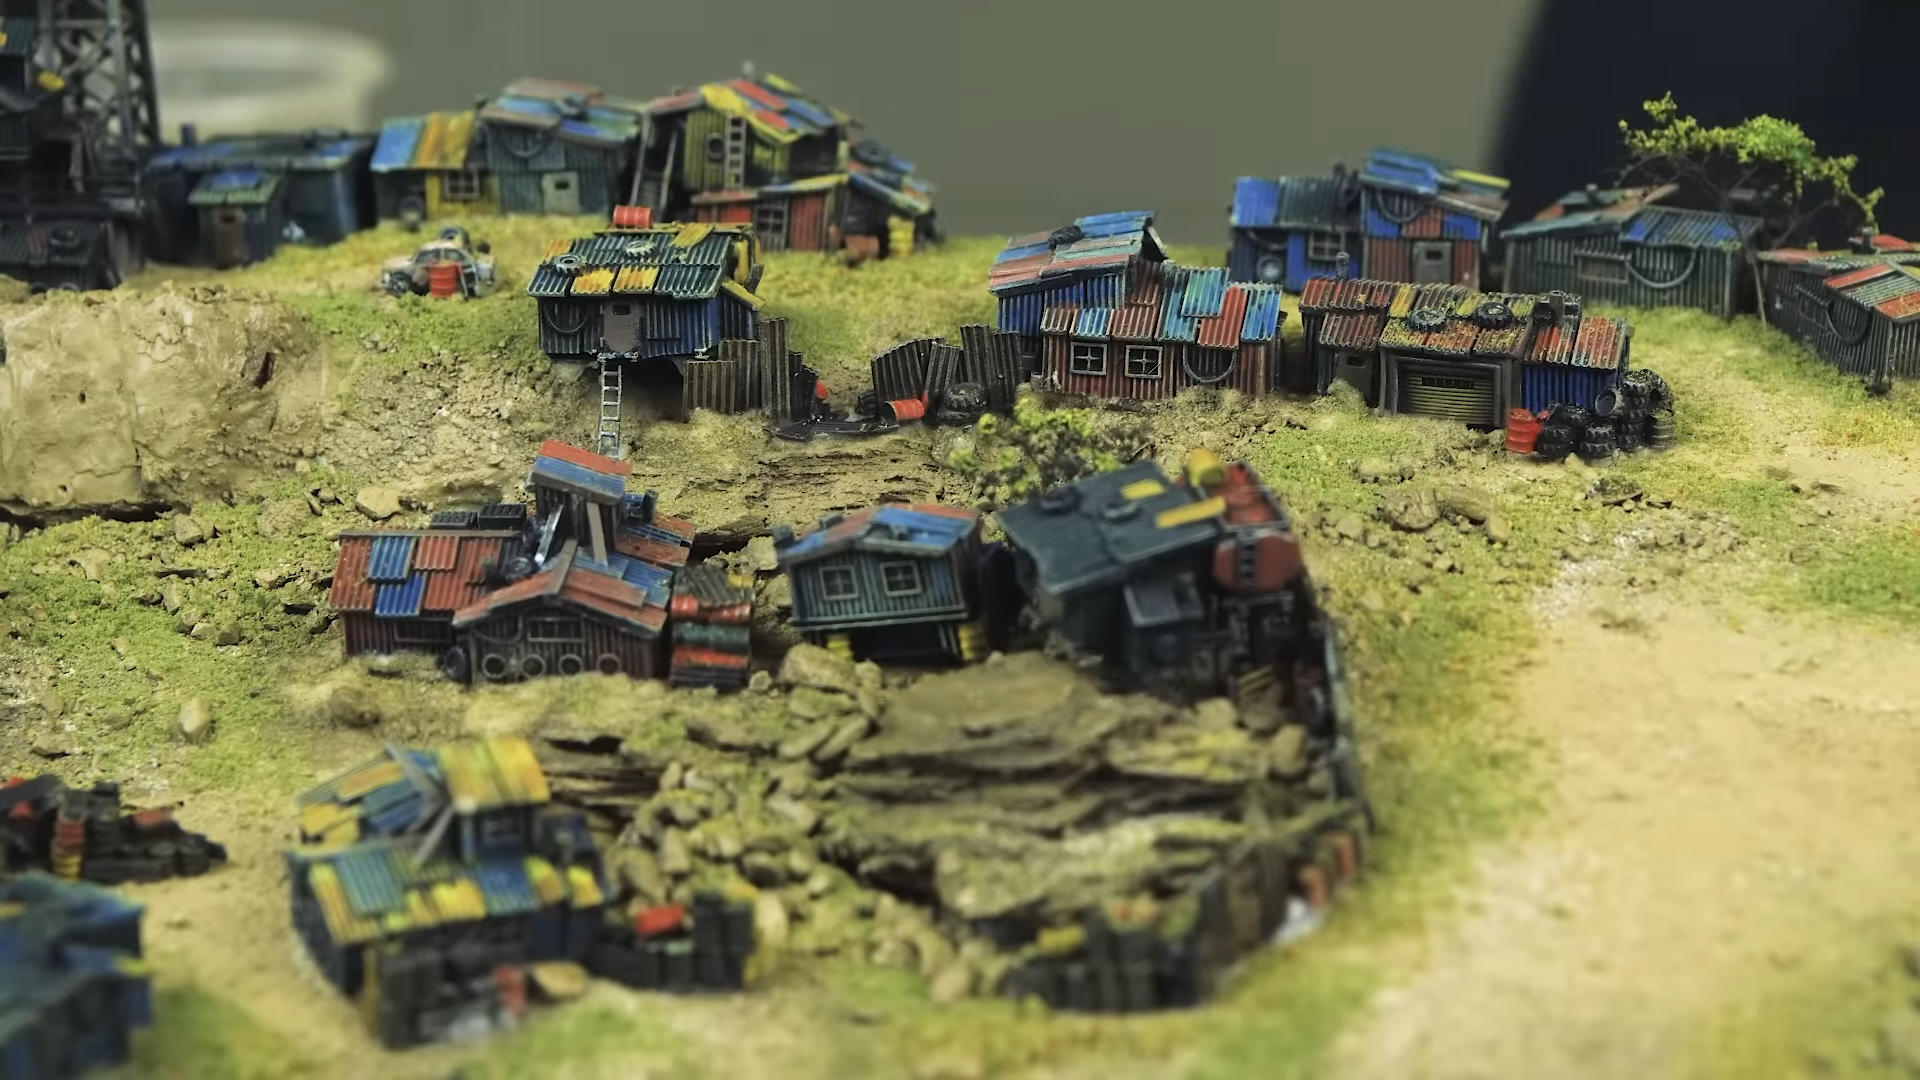 6mm scale miniature terrain diorama